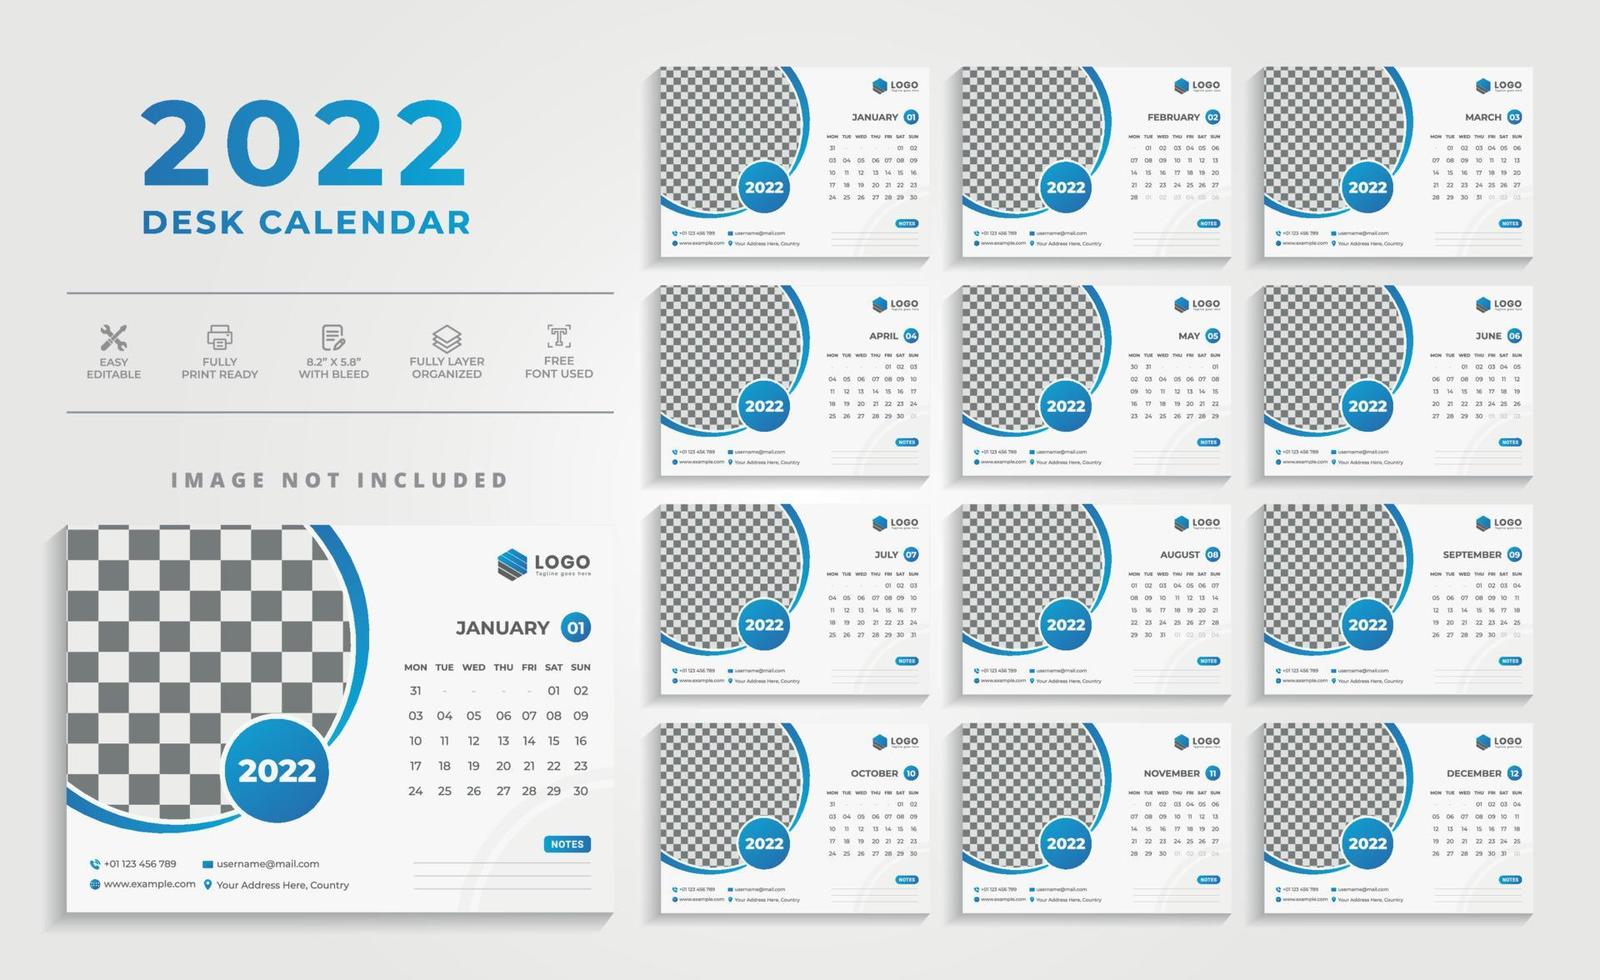 Calendario 2022 de escritorio simple y moderno limpio con diseño de esquema de color azul vector